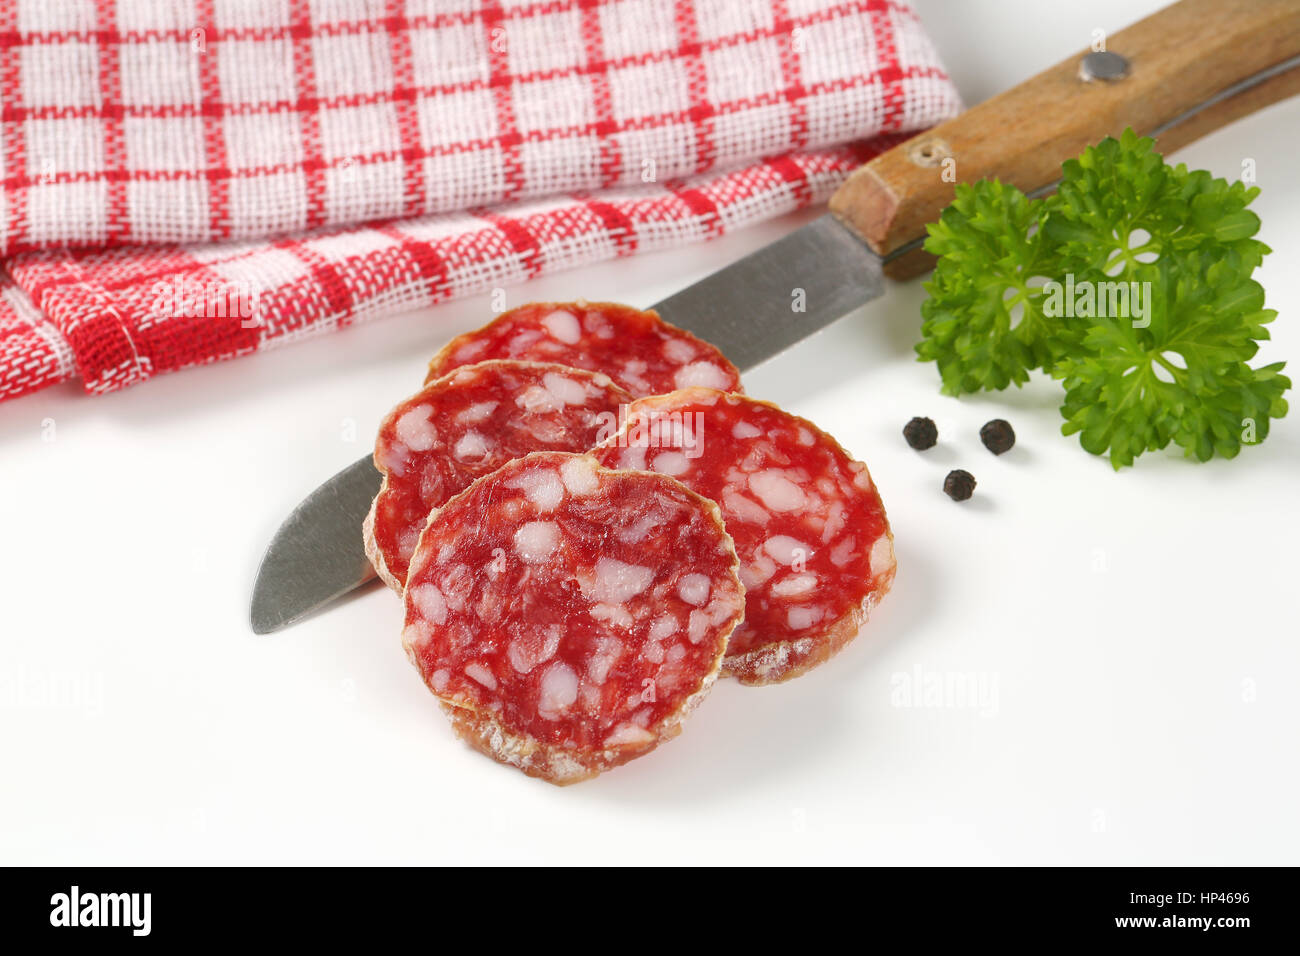 Cerca del francés rodajas de salami seco, cuchillo de cocina y especias sobre fondo blanco. Foto de stock